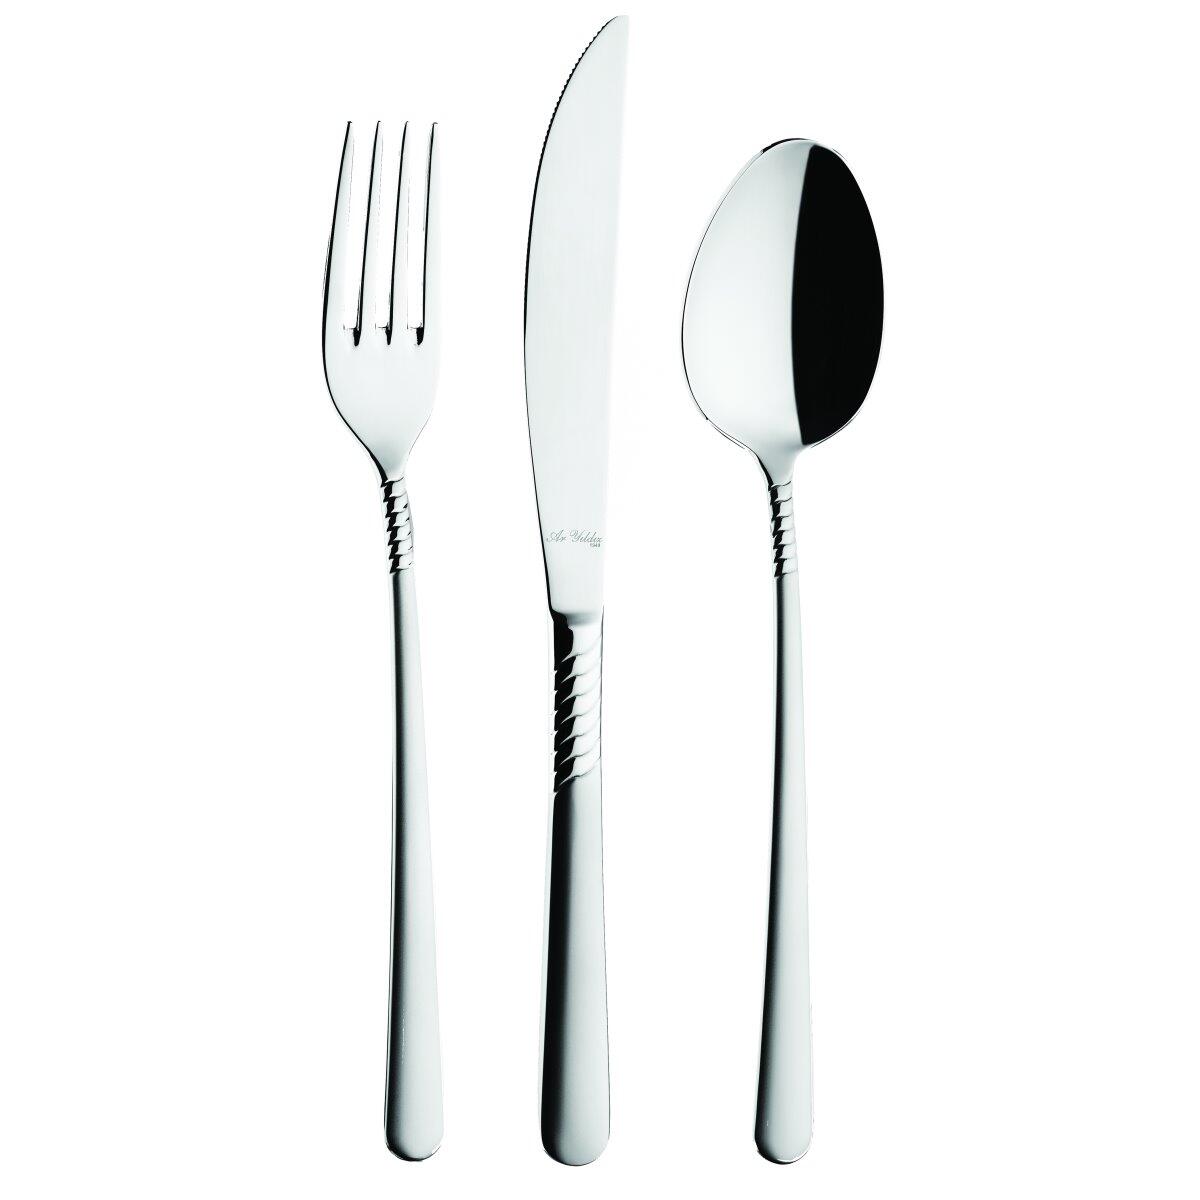 Aryıldız Prestige Fork Spoon Knife 89 Pieces